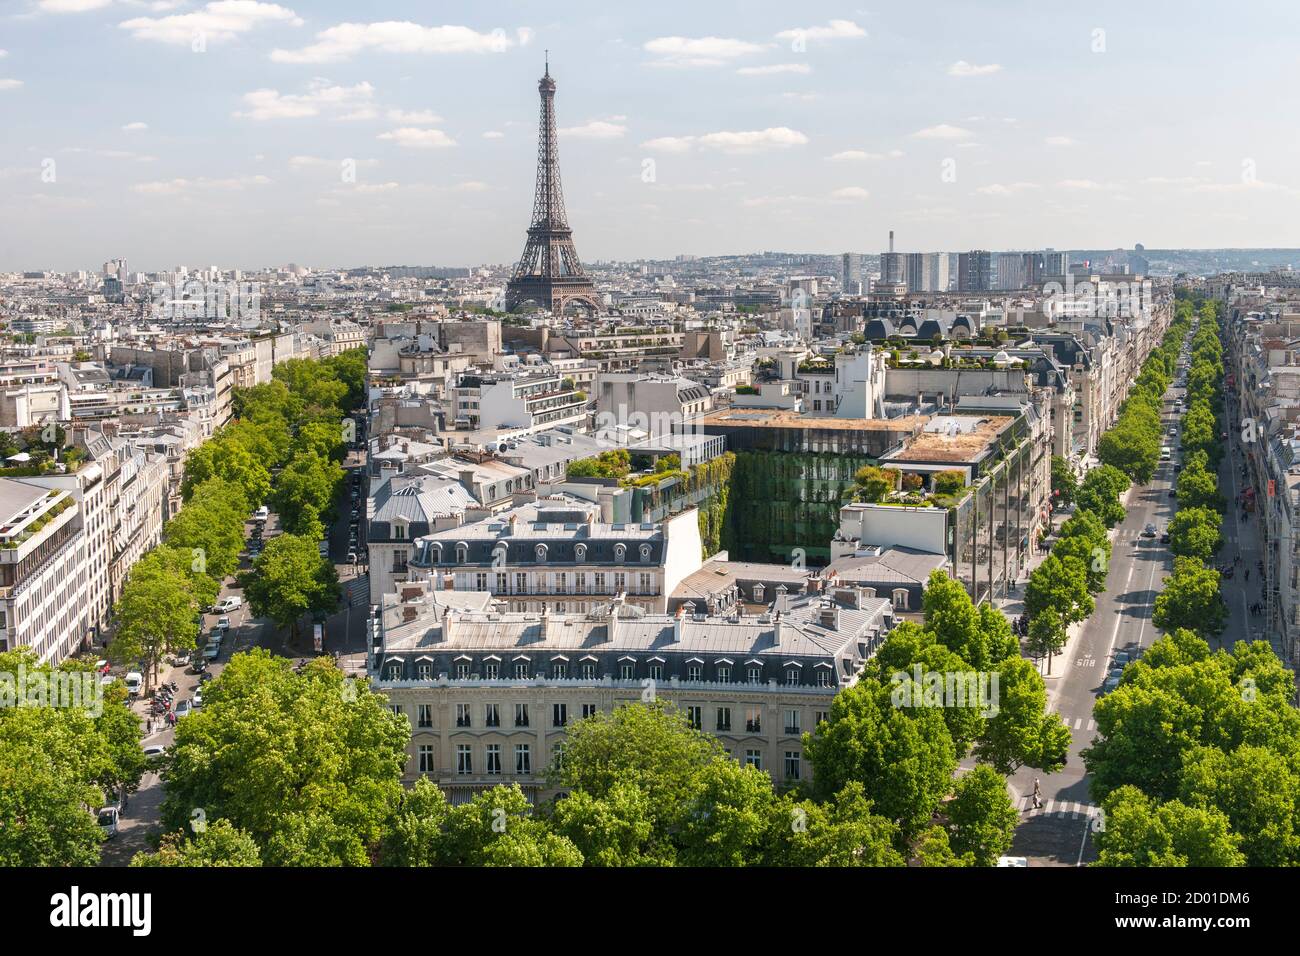 Vista su Parigi dalla cima dell'Arco di Trionfo. Avenue d'Iéna gira a sinistra e Avenue Kléber a destra dell'immagine. Foto Stock